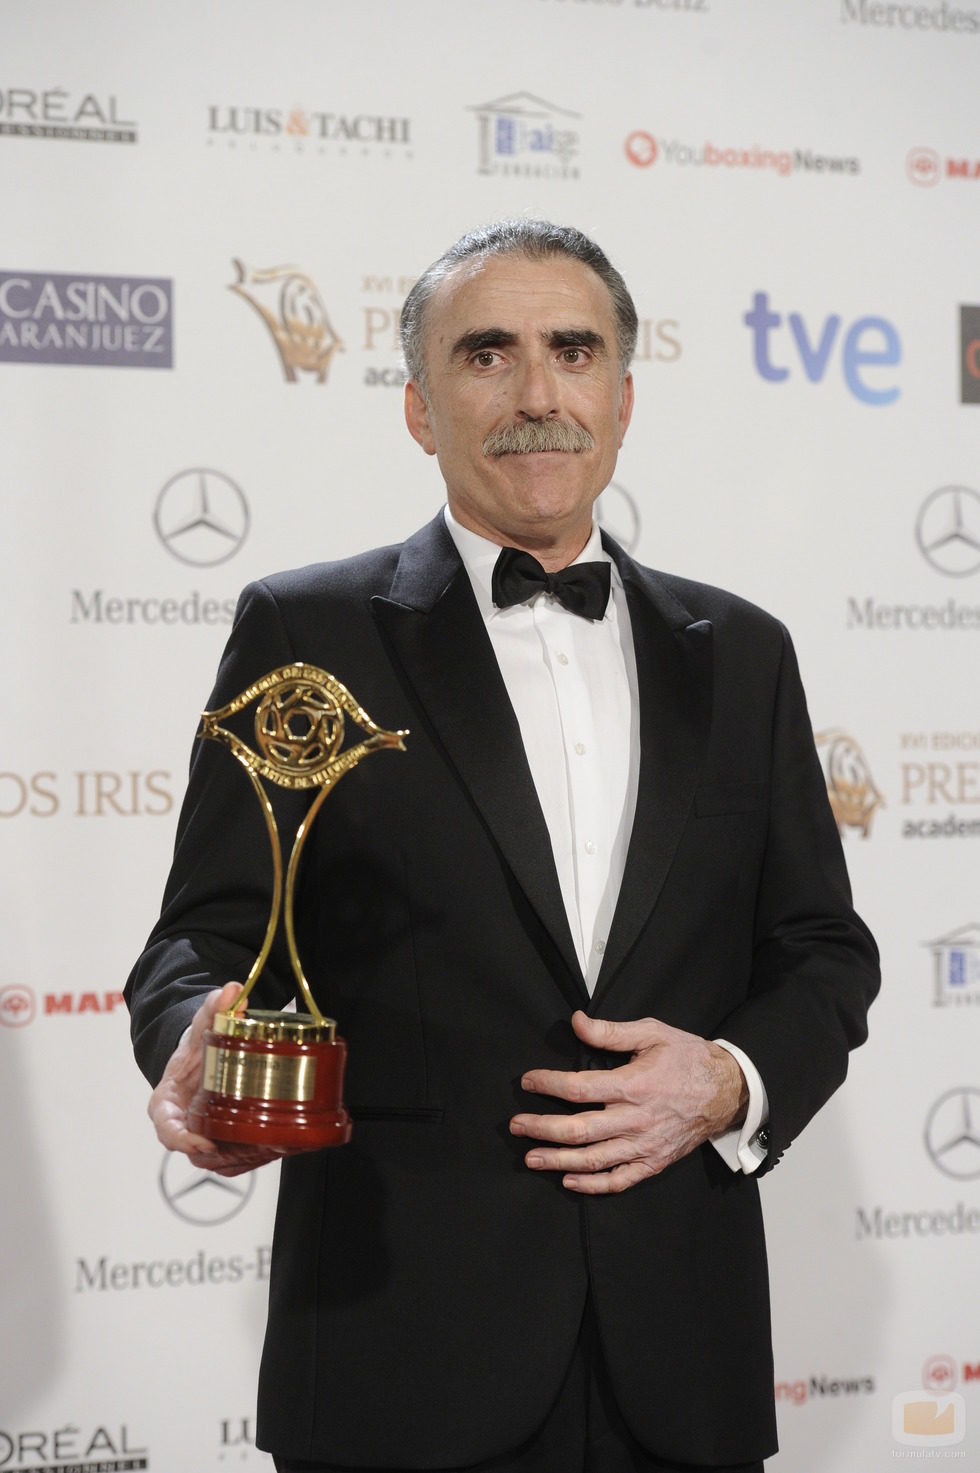 Juan y Medio, mejor presentador de programas autonómicos Premios Iris 2014